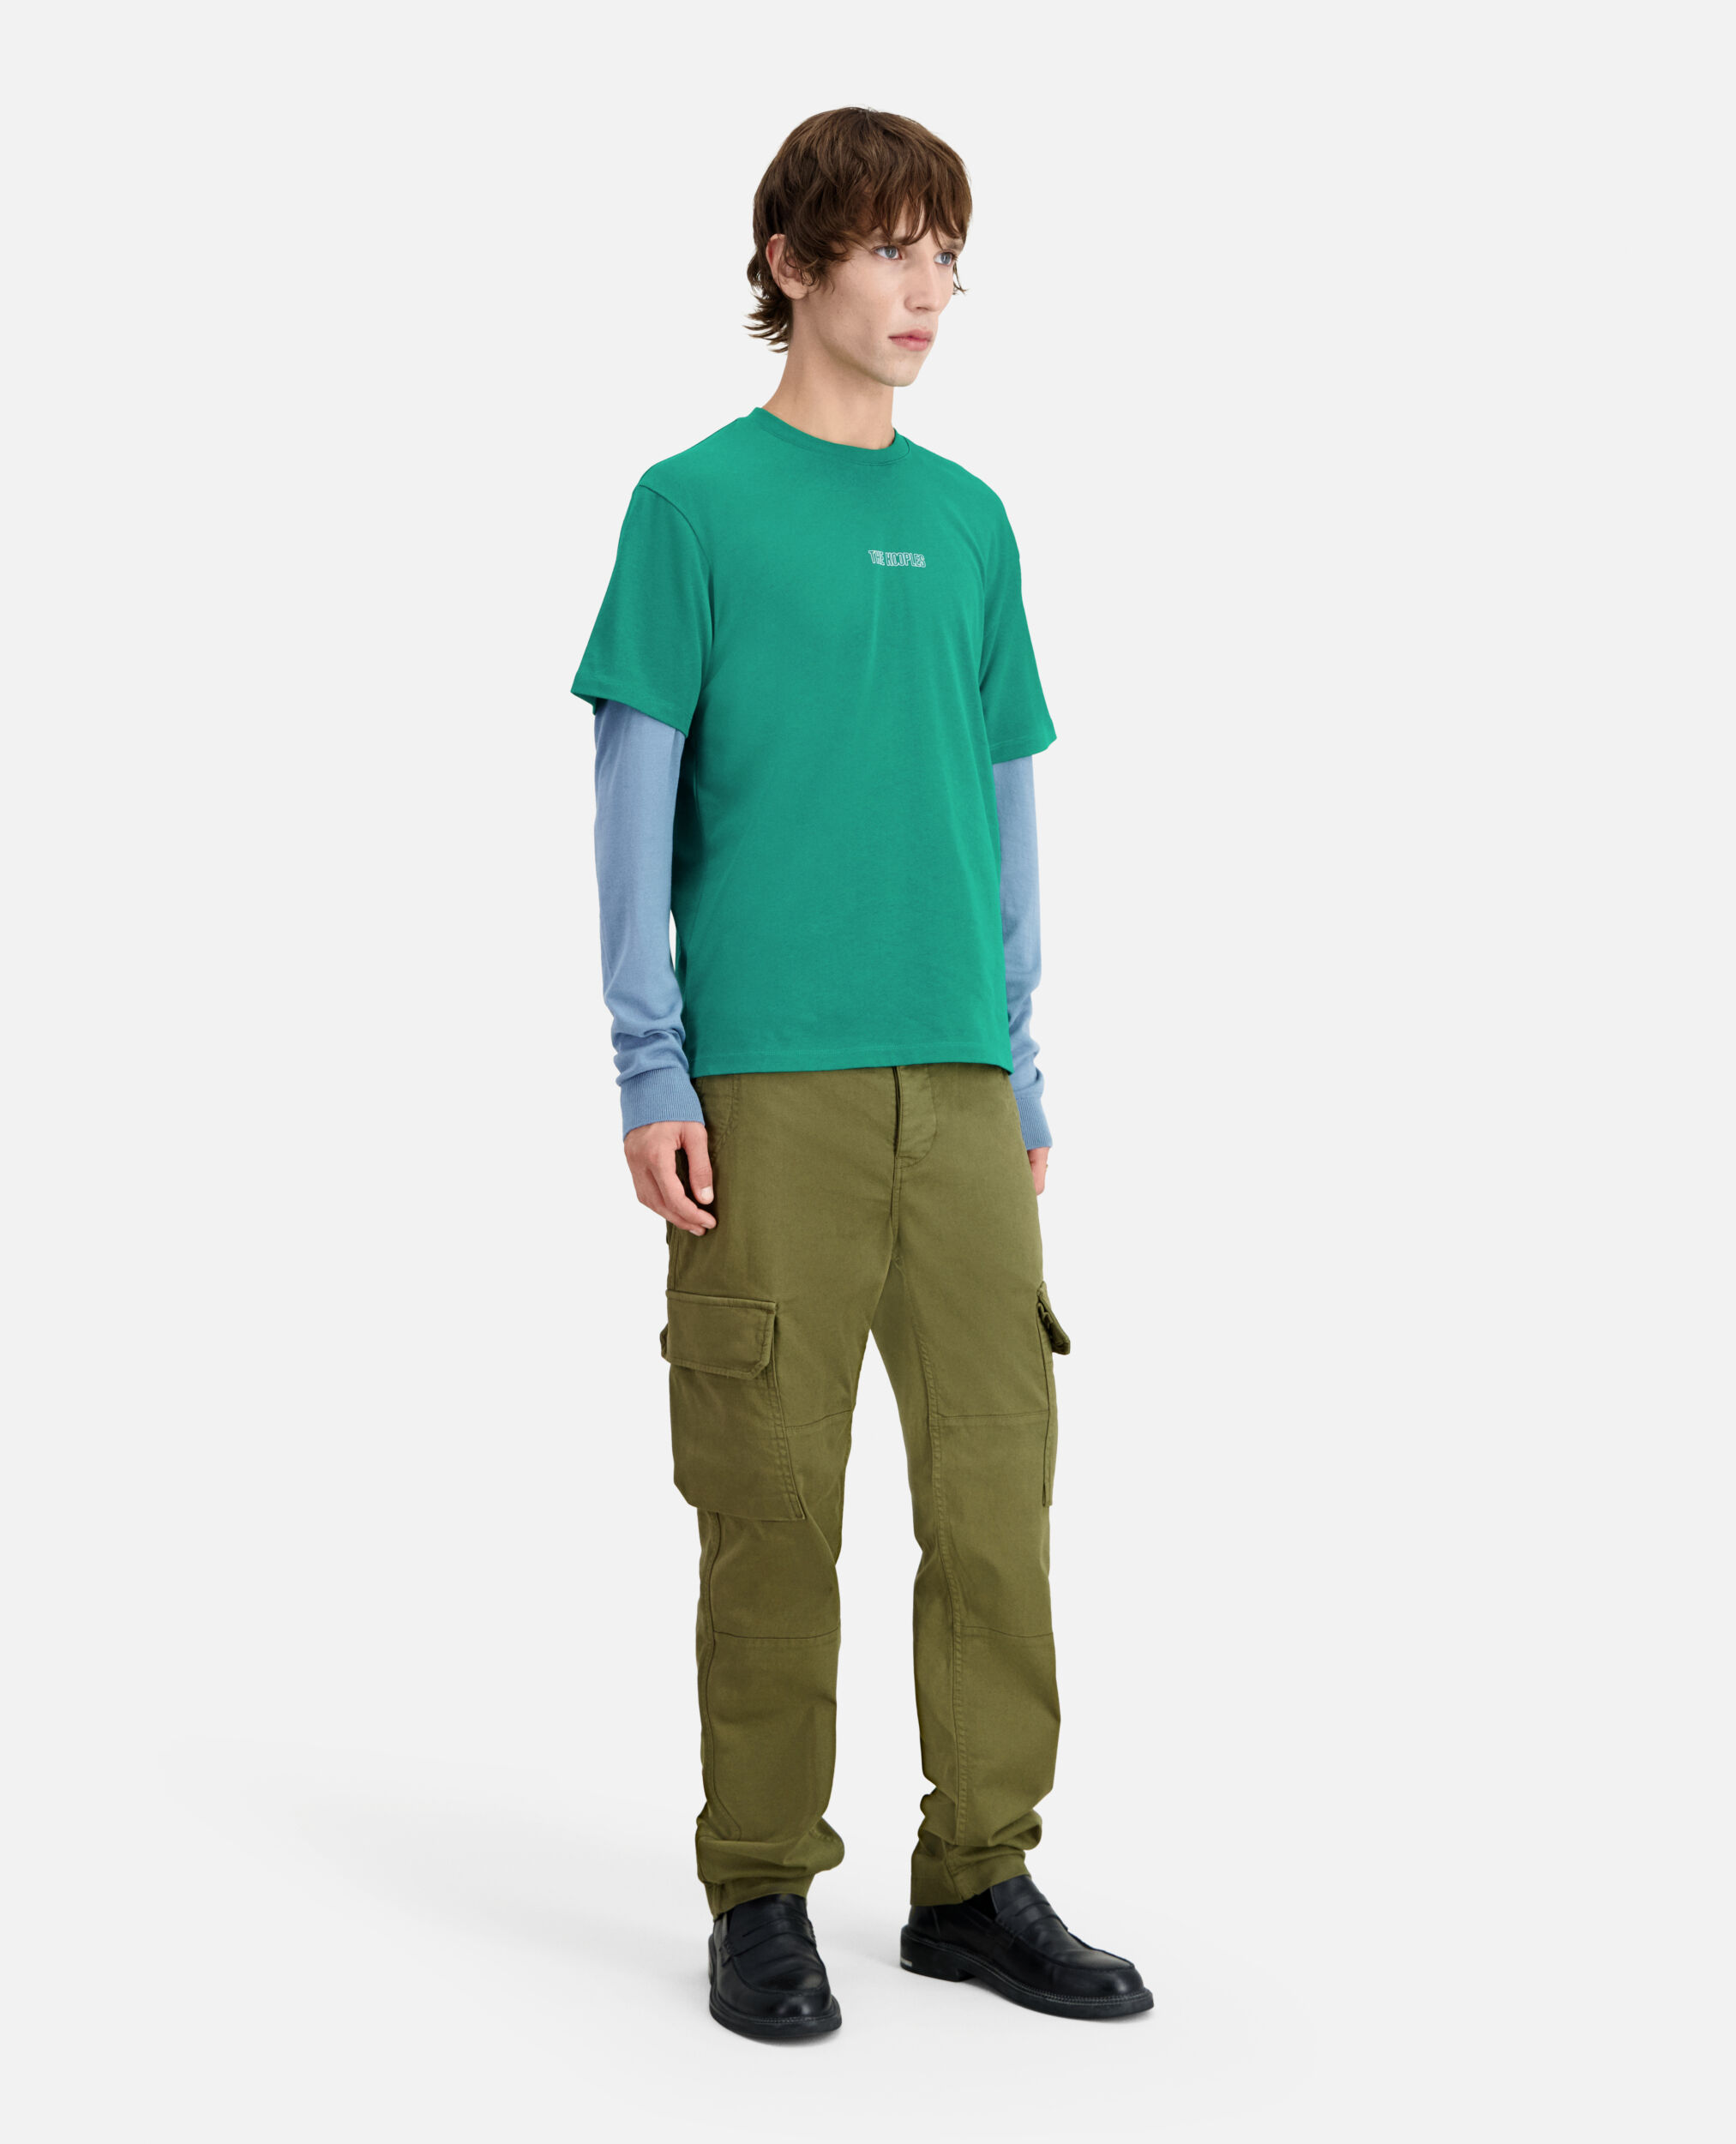 T-shirt Homme vert avec logo, FOREST, hi-res image number null